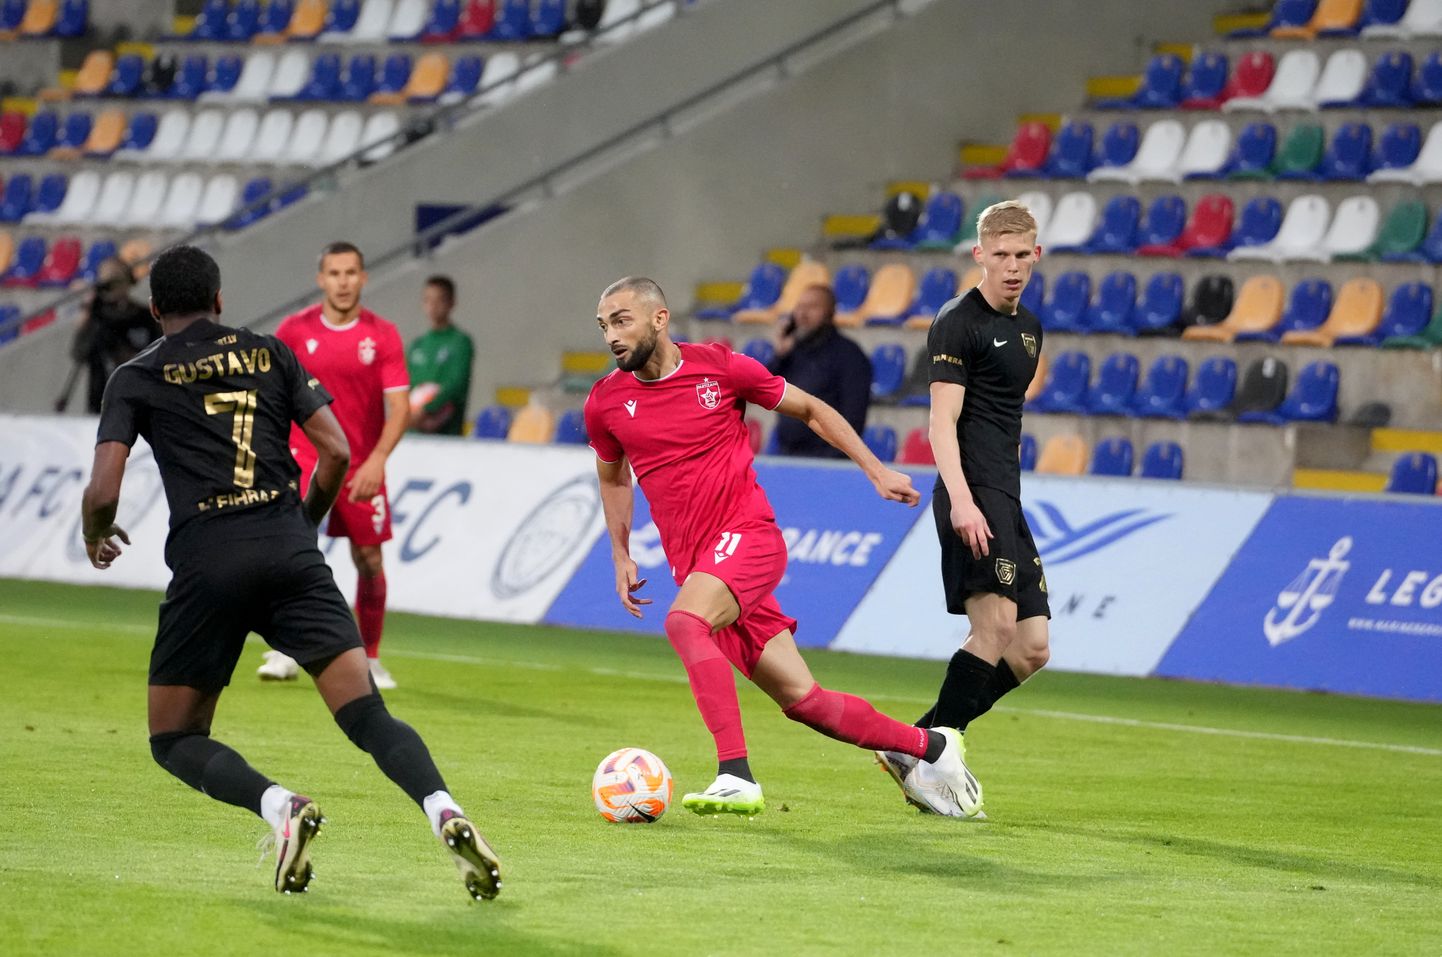 UEFA Konferences līgas kvalifikācijas trešās kārtas spēle futbolā starp FK "Valmiera" un Tirānas "Partizani" komandām "Skonto" stadionā.